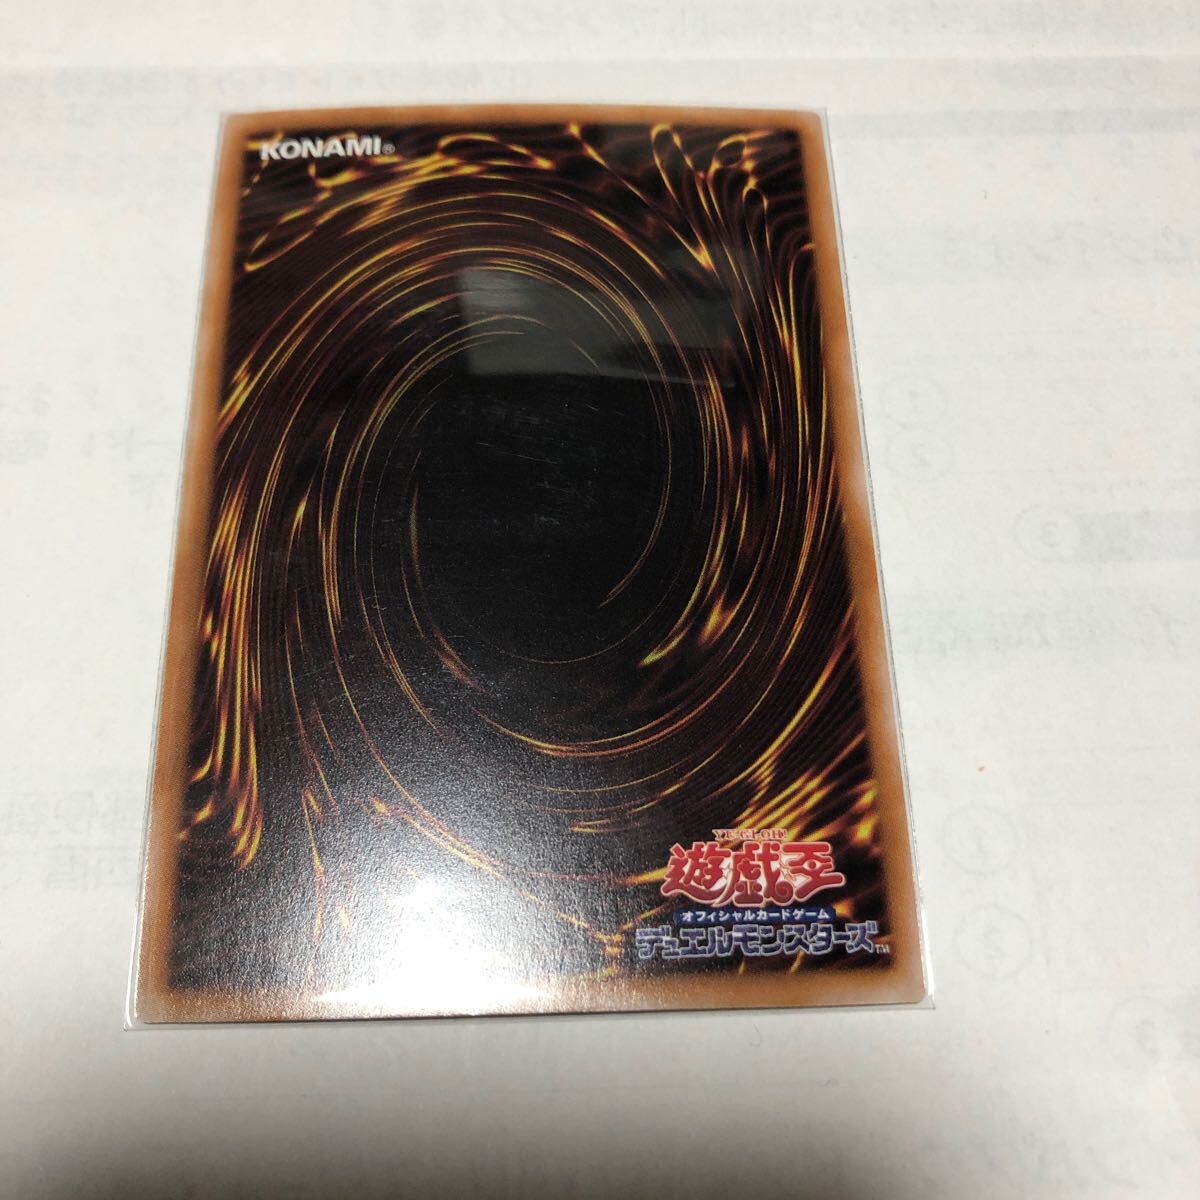 遊戯王カード 020 レリーフ No.62 銀眼の光子竜皇 1枚 素人保管のため、中古商品としてご理解頂いてご入札ください。の画像5